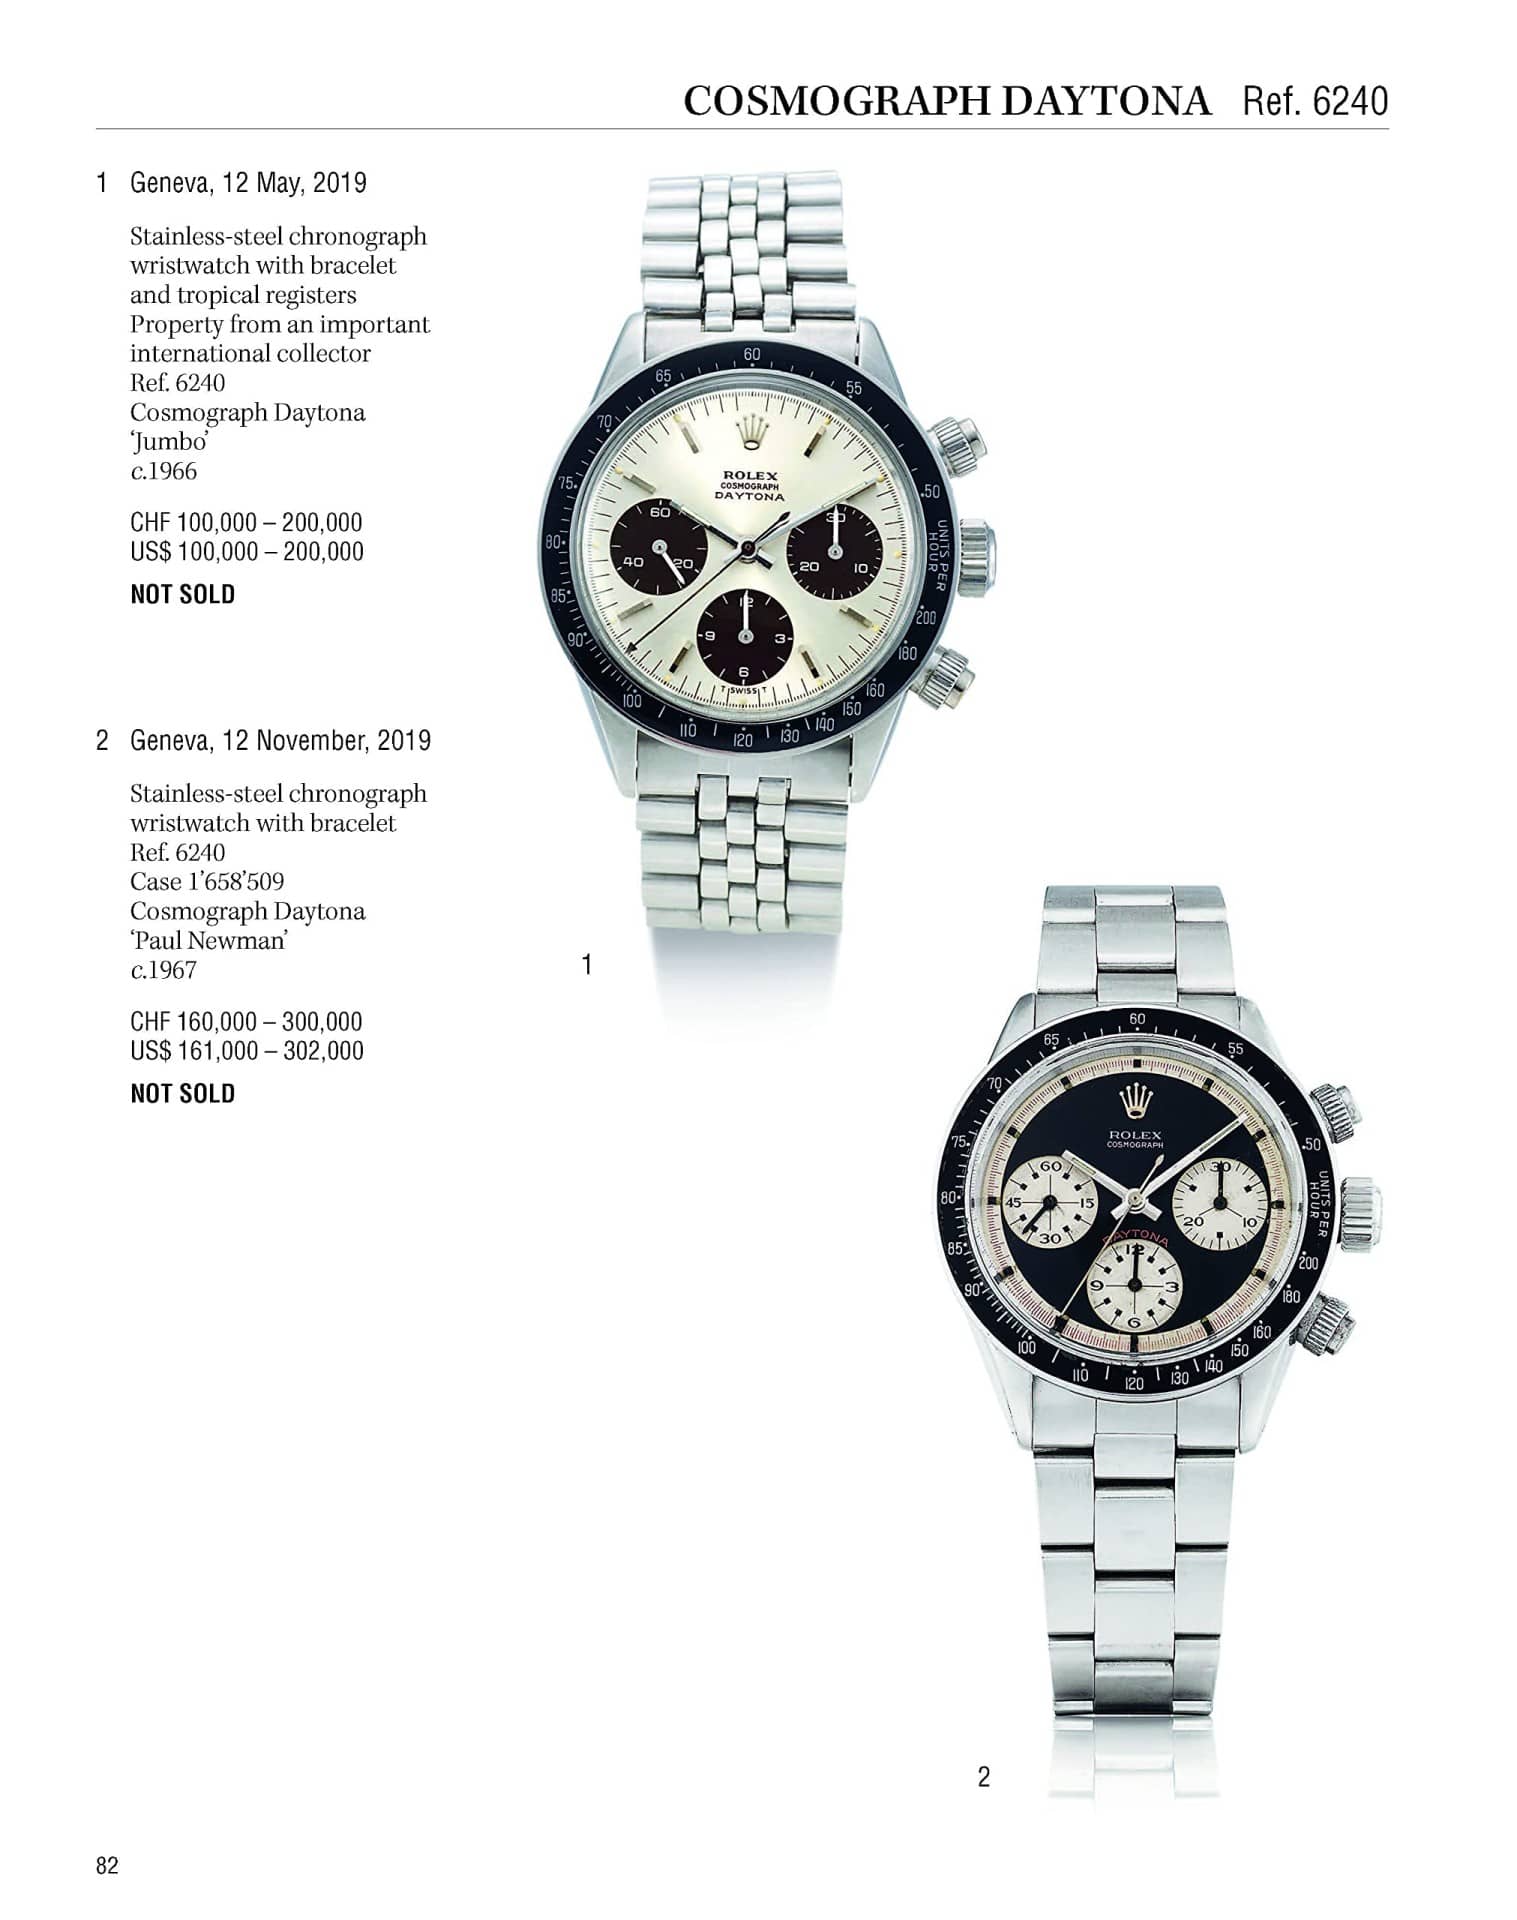 11577-rolex-investing-in-wristwatches-81plewfc2sl-jpg-81plewfc2sl